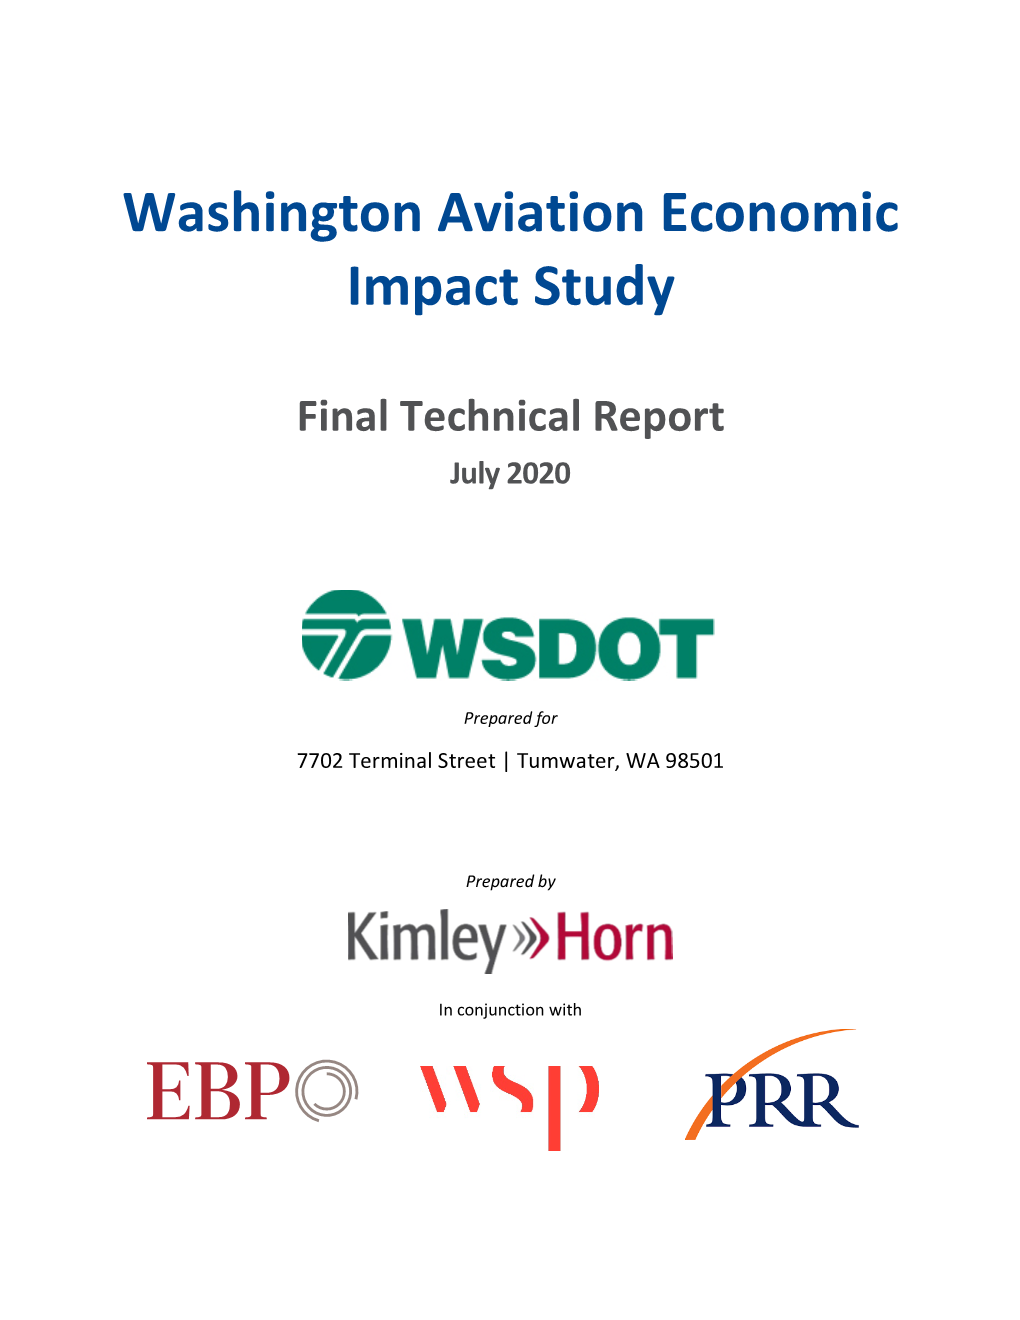 Washington Aviation Economic Impact Study